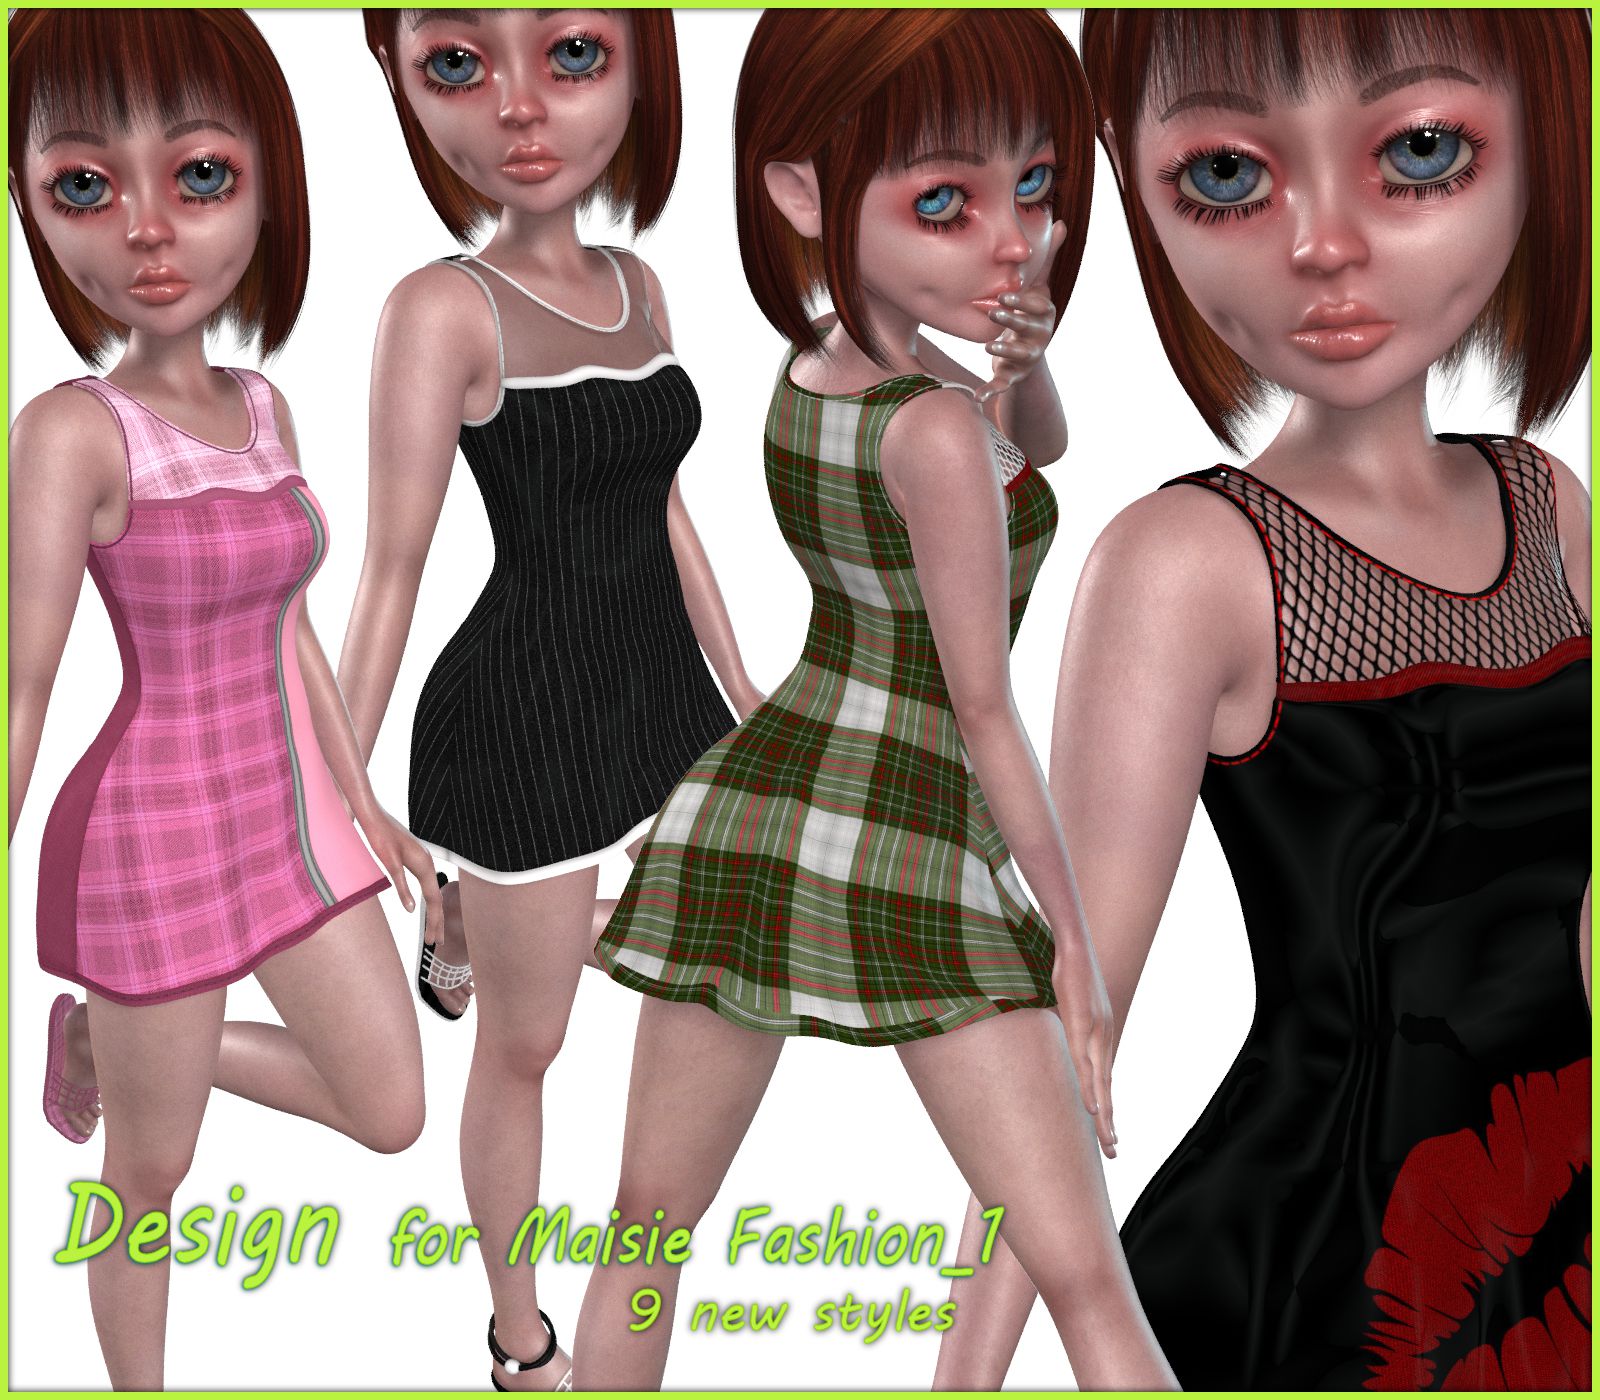 Designs for Maisie Fashion_1_DAZ3D下载站